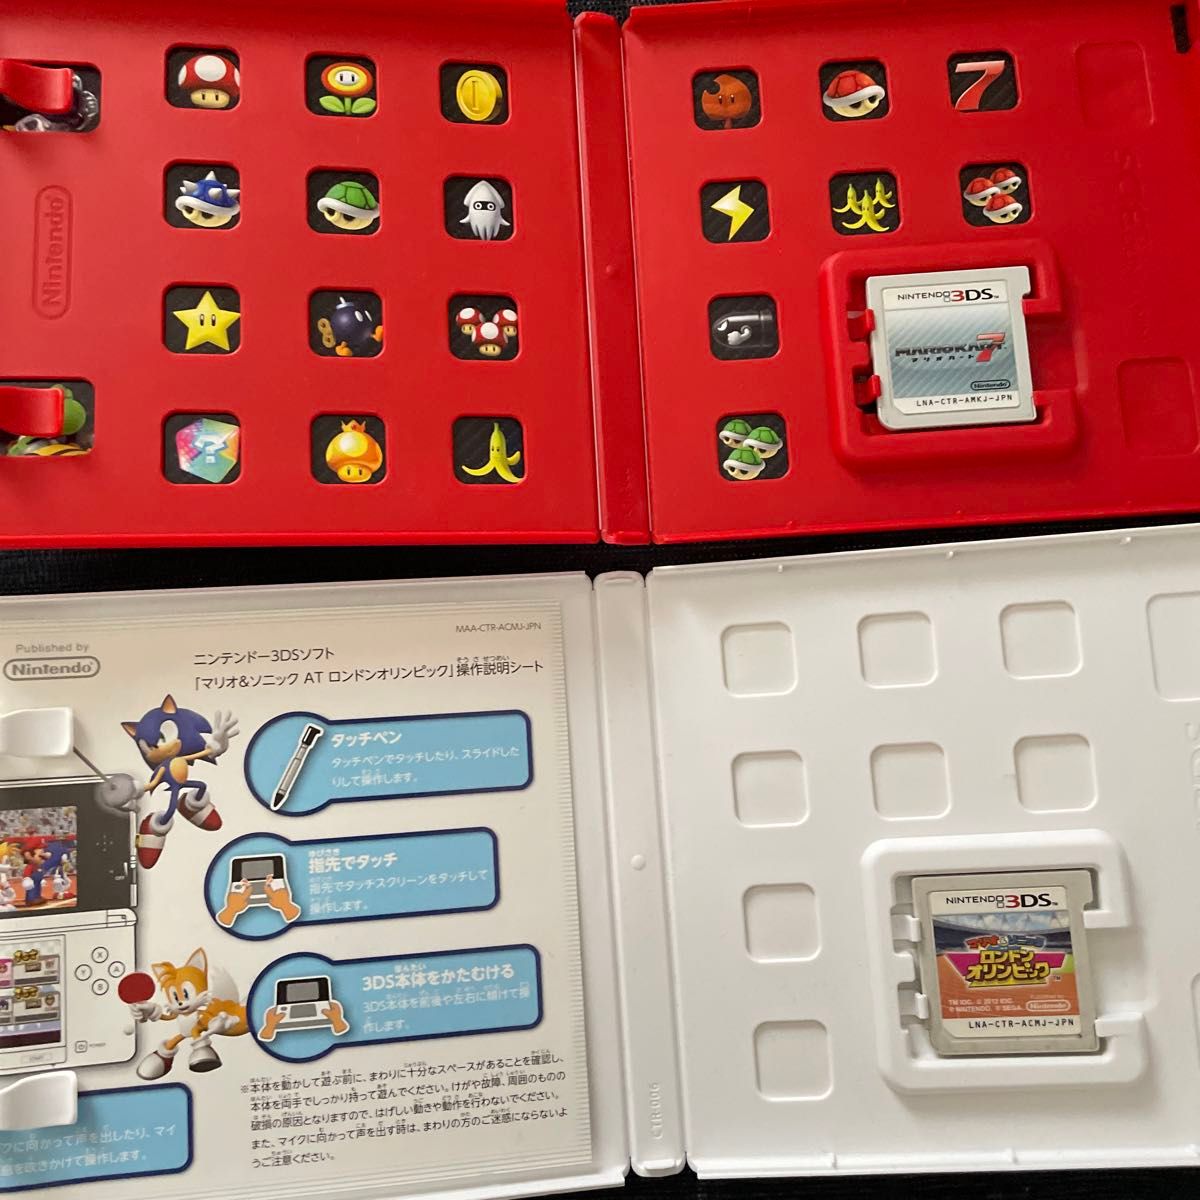 3DS マリオカート7とびだせどうぶつの森マリオ&ソニックロンドンオリンピックスーパーマリオメーカー